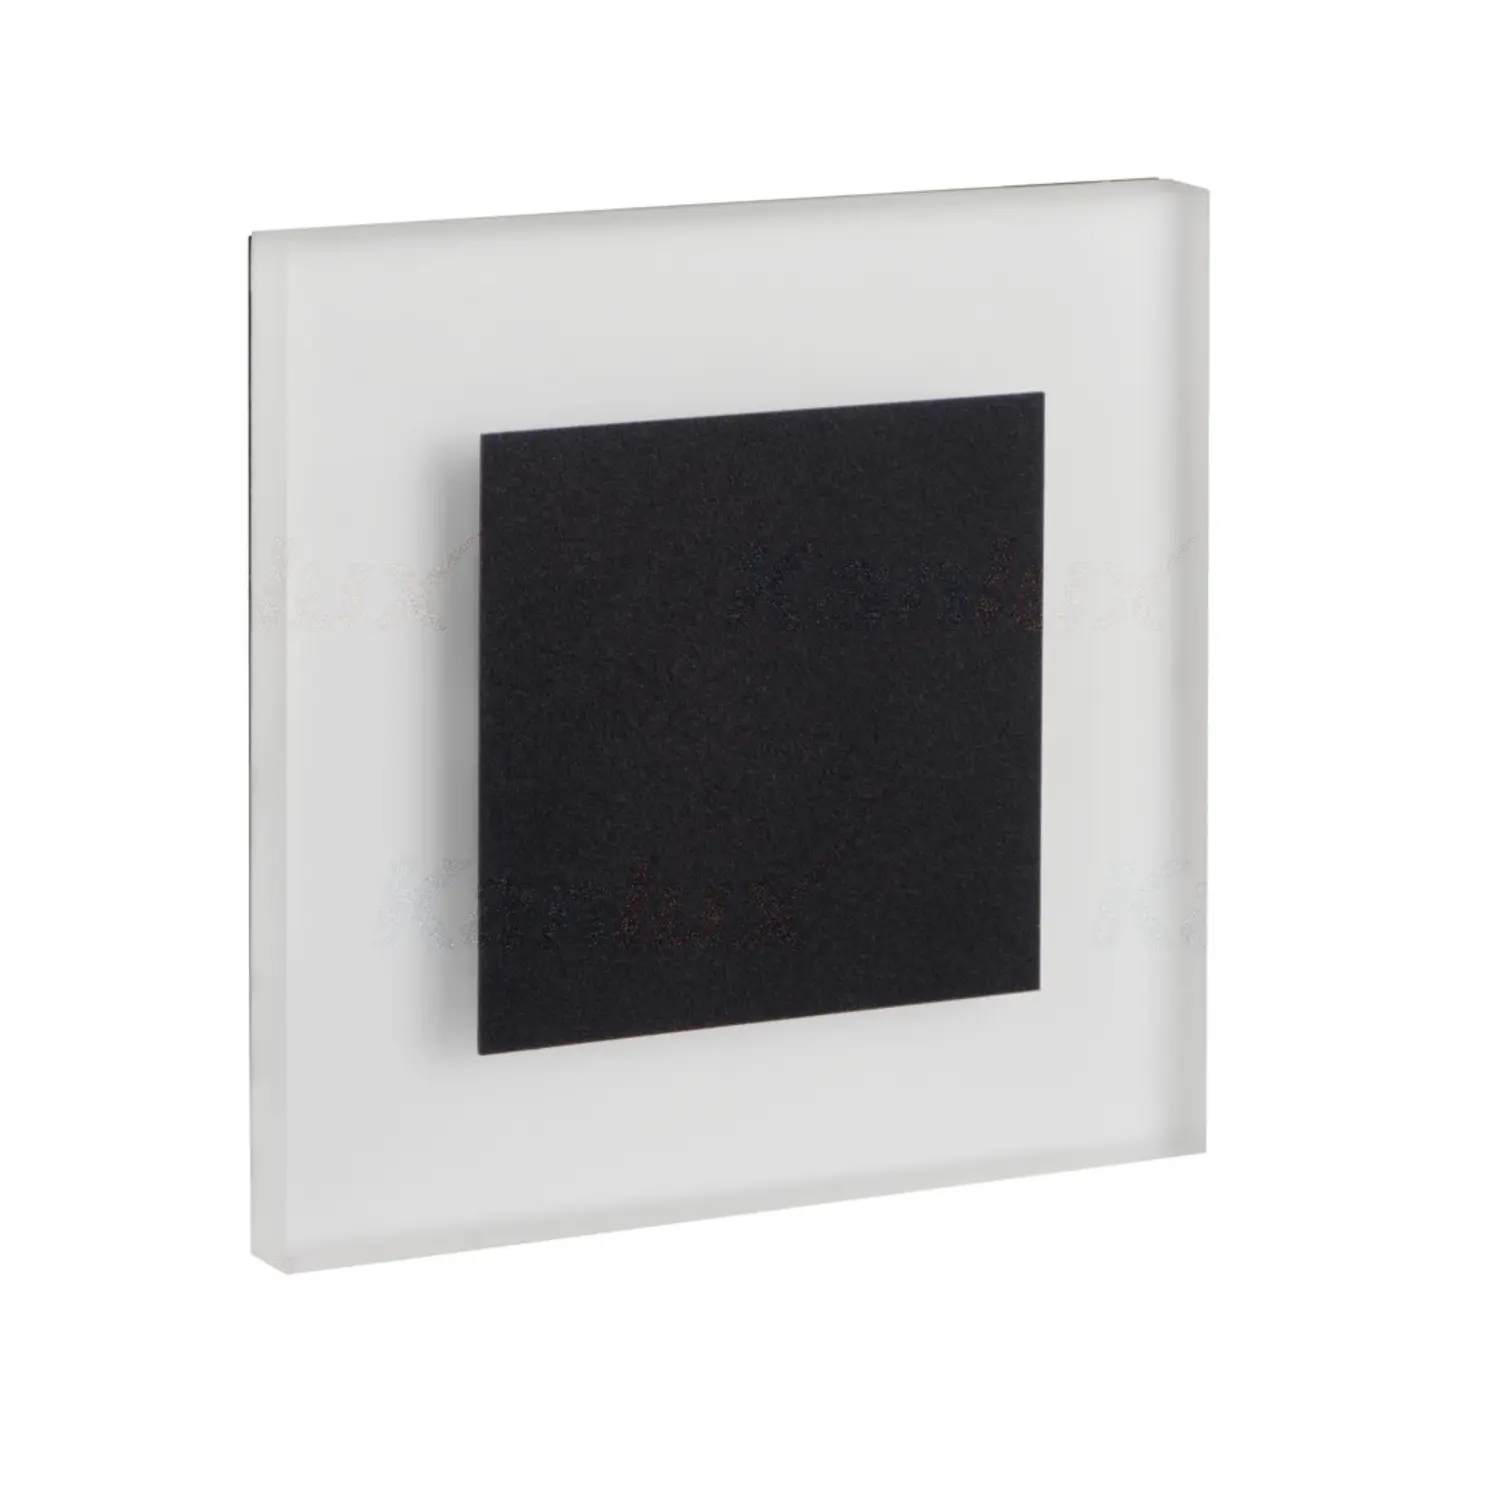 immagine del prodotto segnapasso da incasso led 1,30 watt 220-240 volt bianco naturale nero quadrato